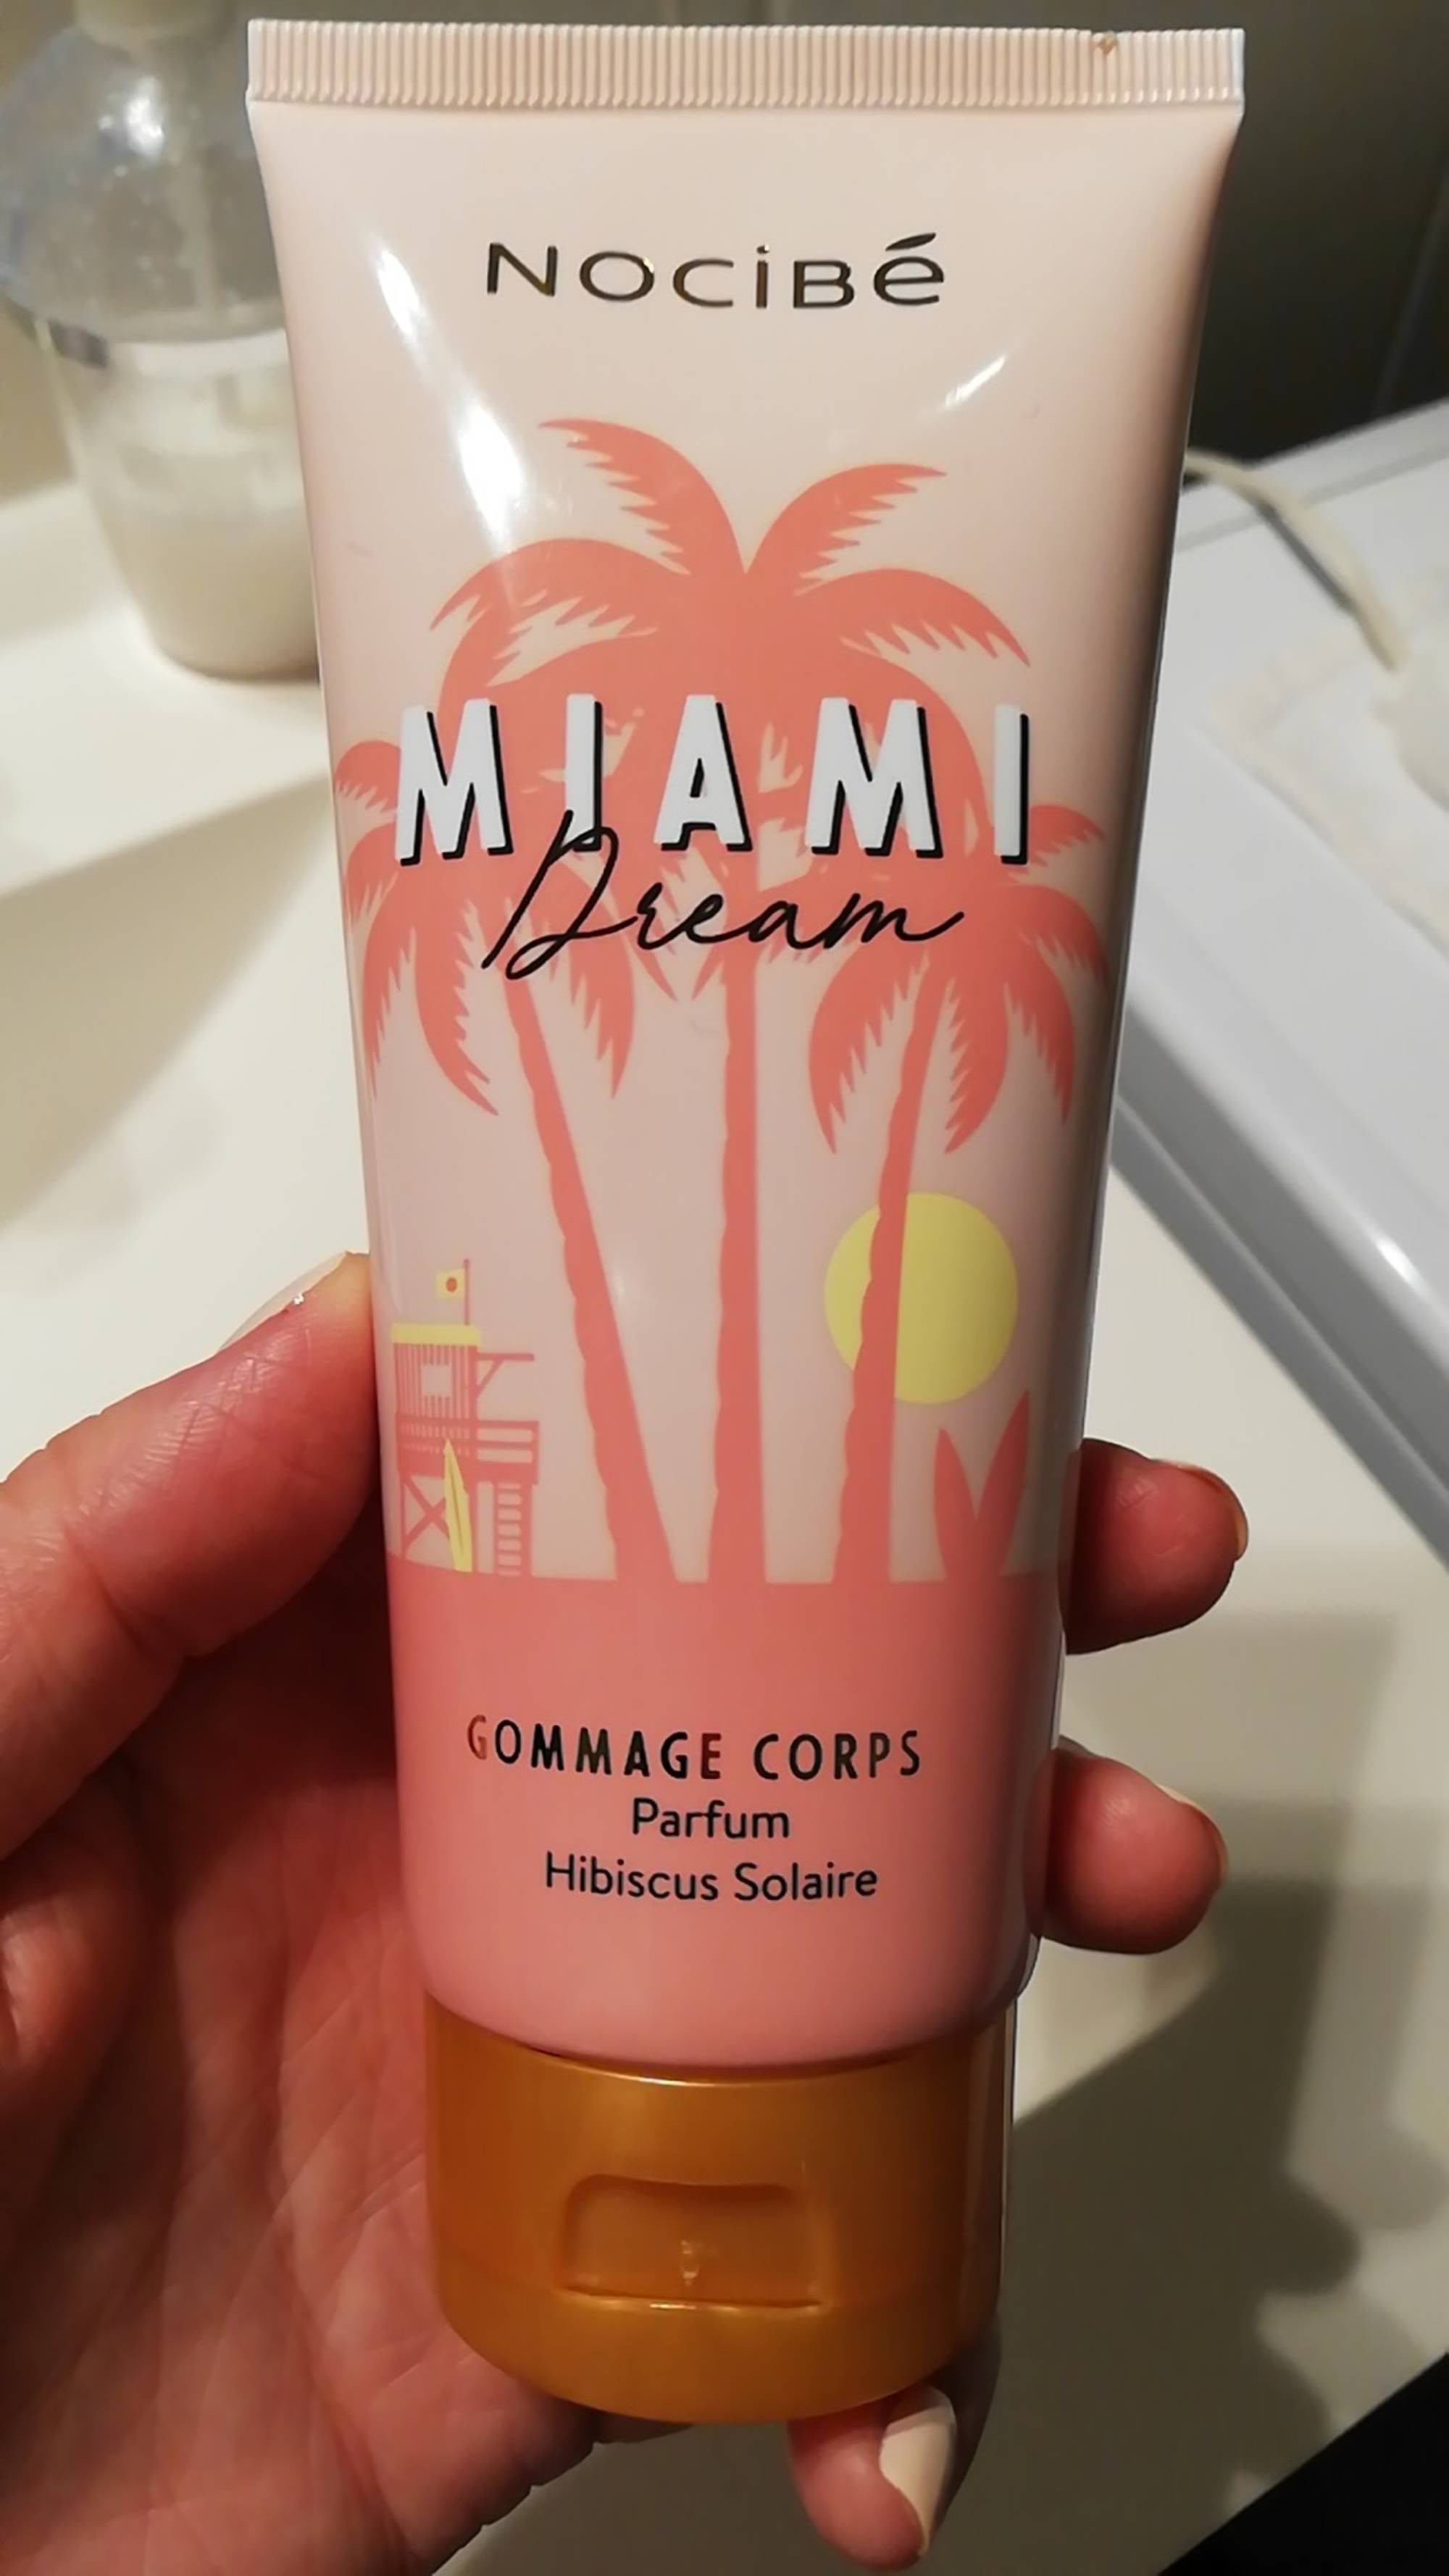 NOCIBÉ - Miami dream - Gommage corps